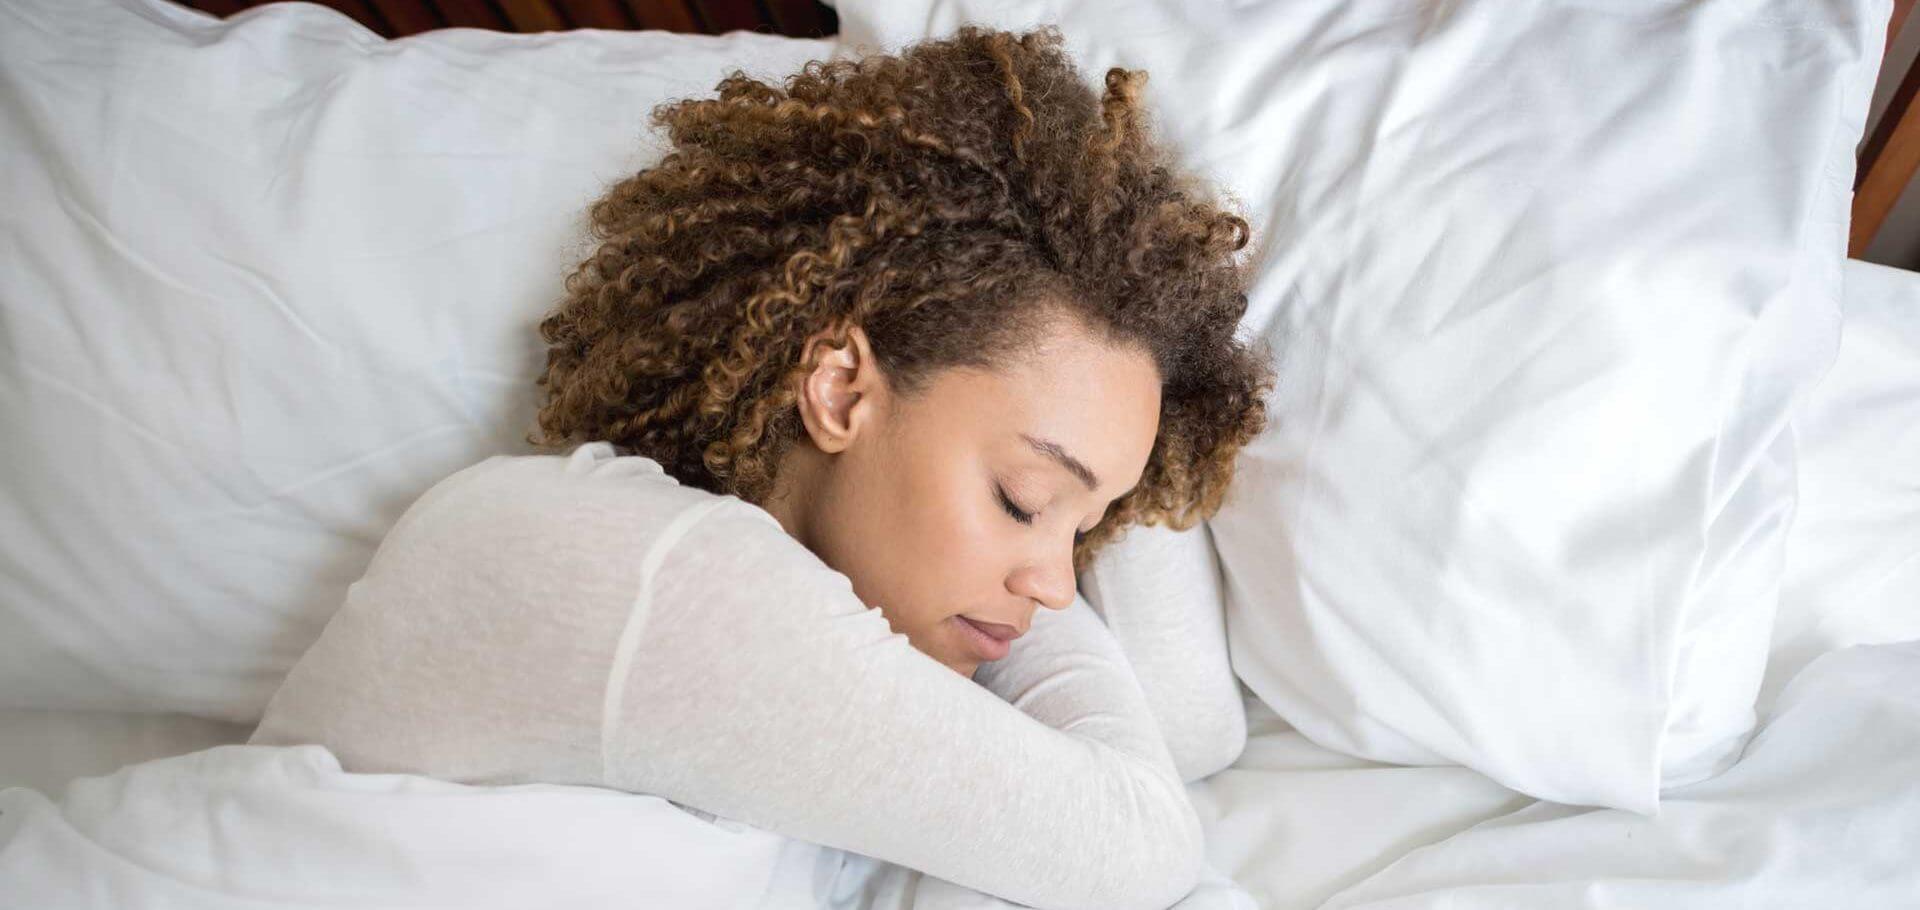 Descanse lo que se merece: la glicina puede ayudarlo a disfrutar de un sueño más profundo y saludable